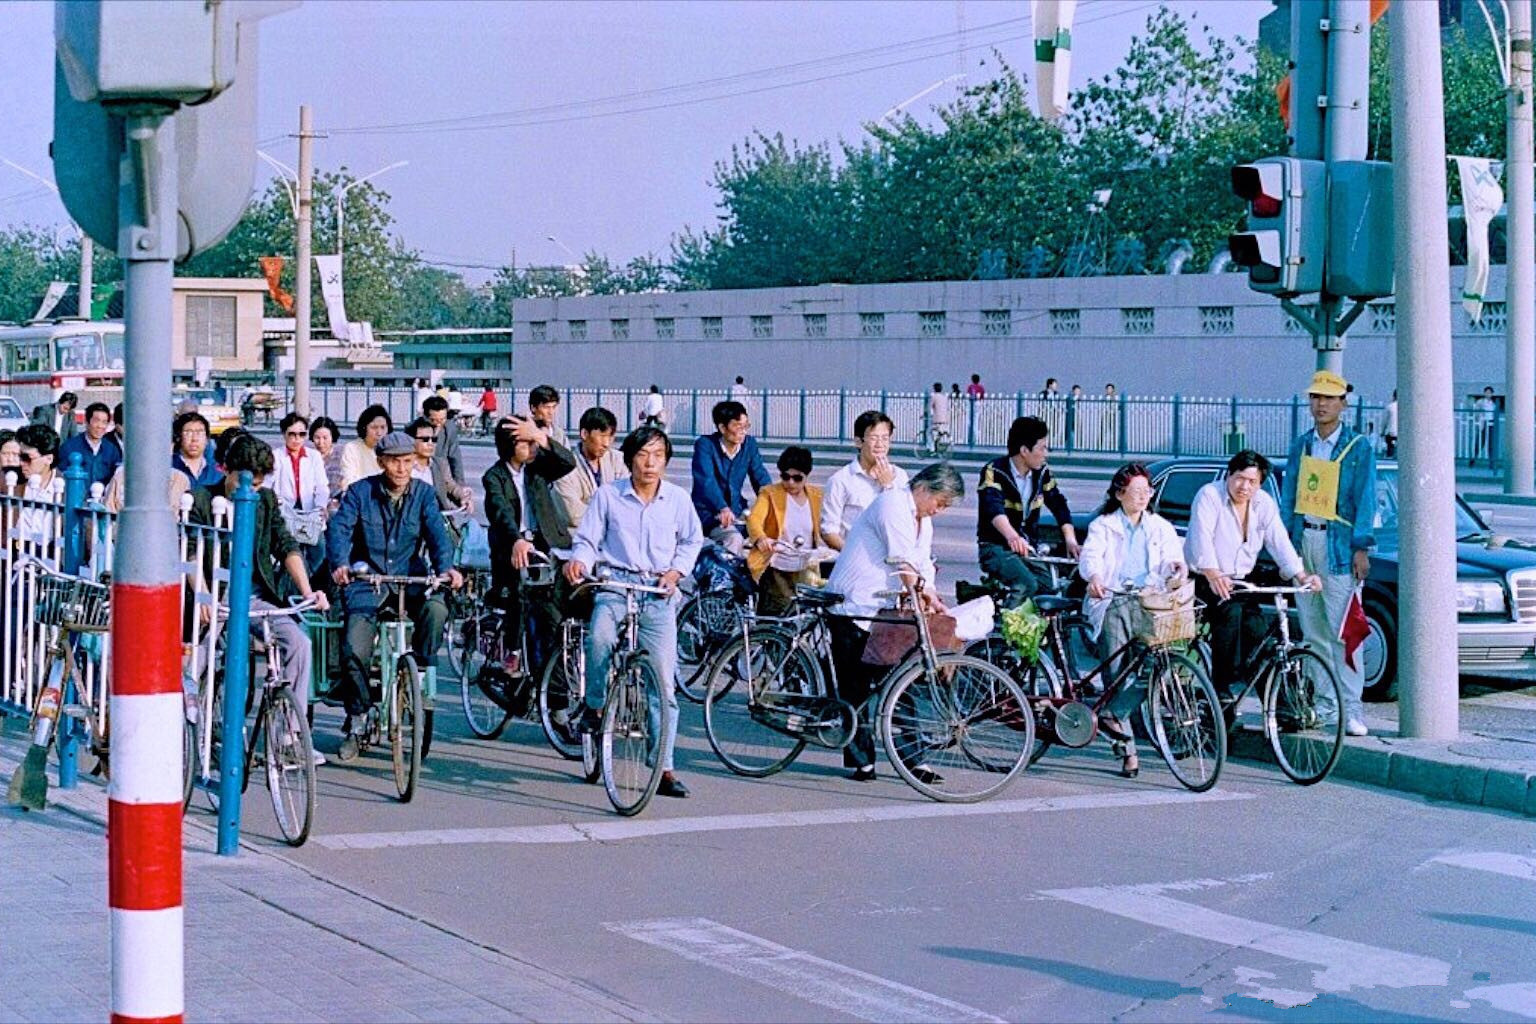 90年代中国珍贵历史老照片:北京街上,人们骑着自行车在马路上等红绿灯